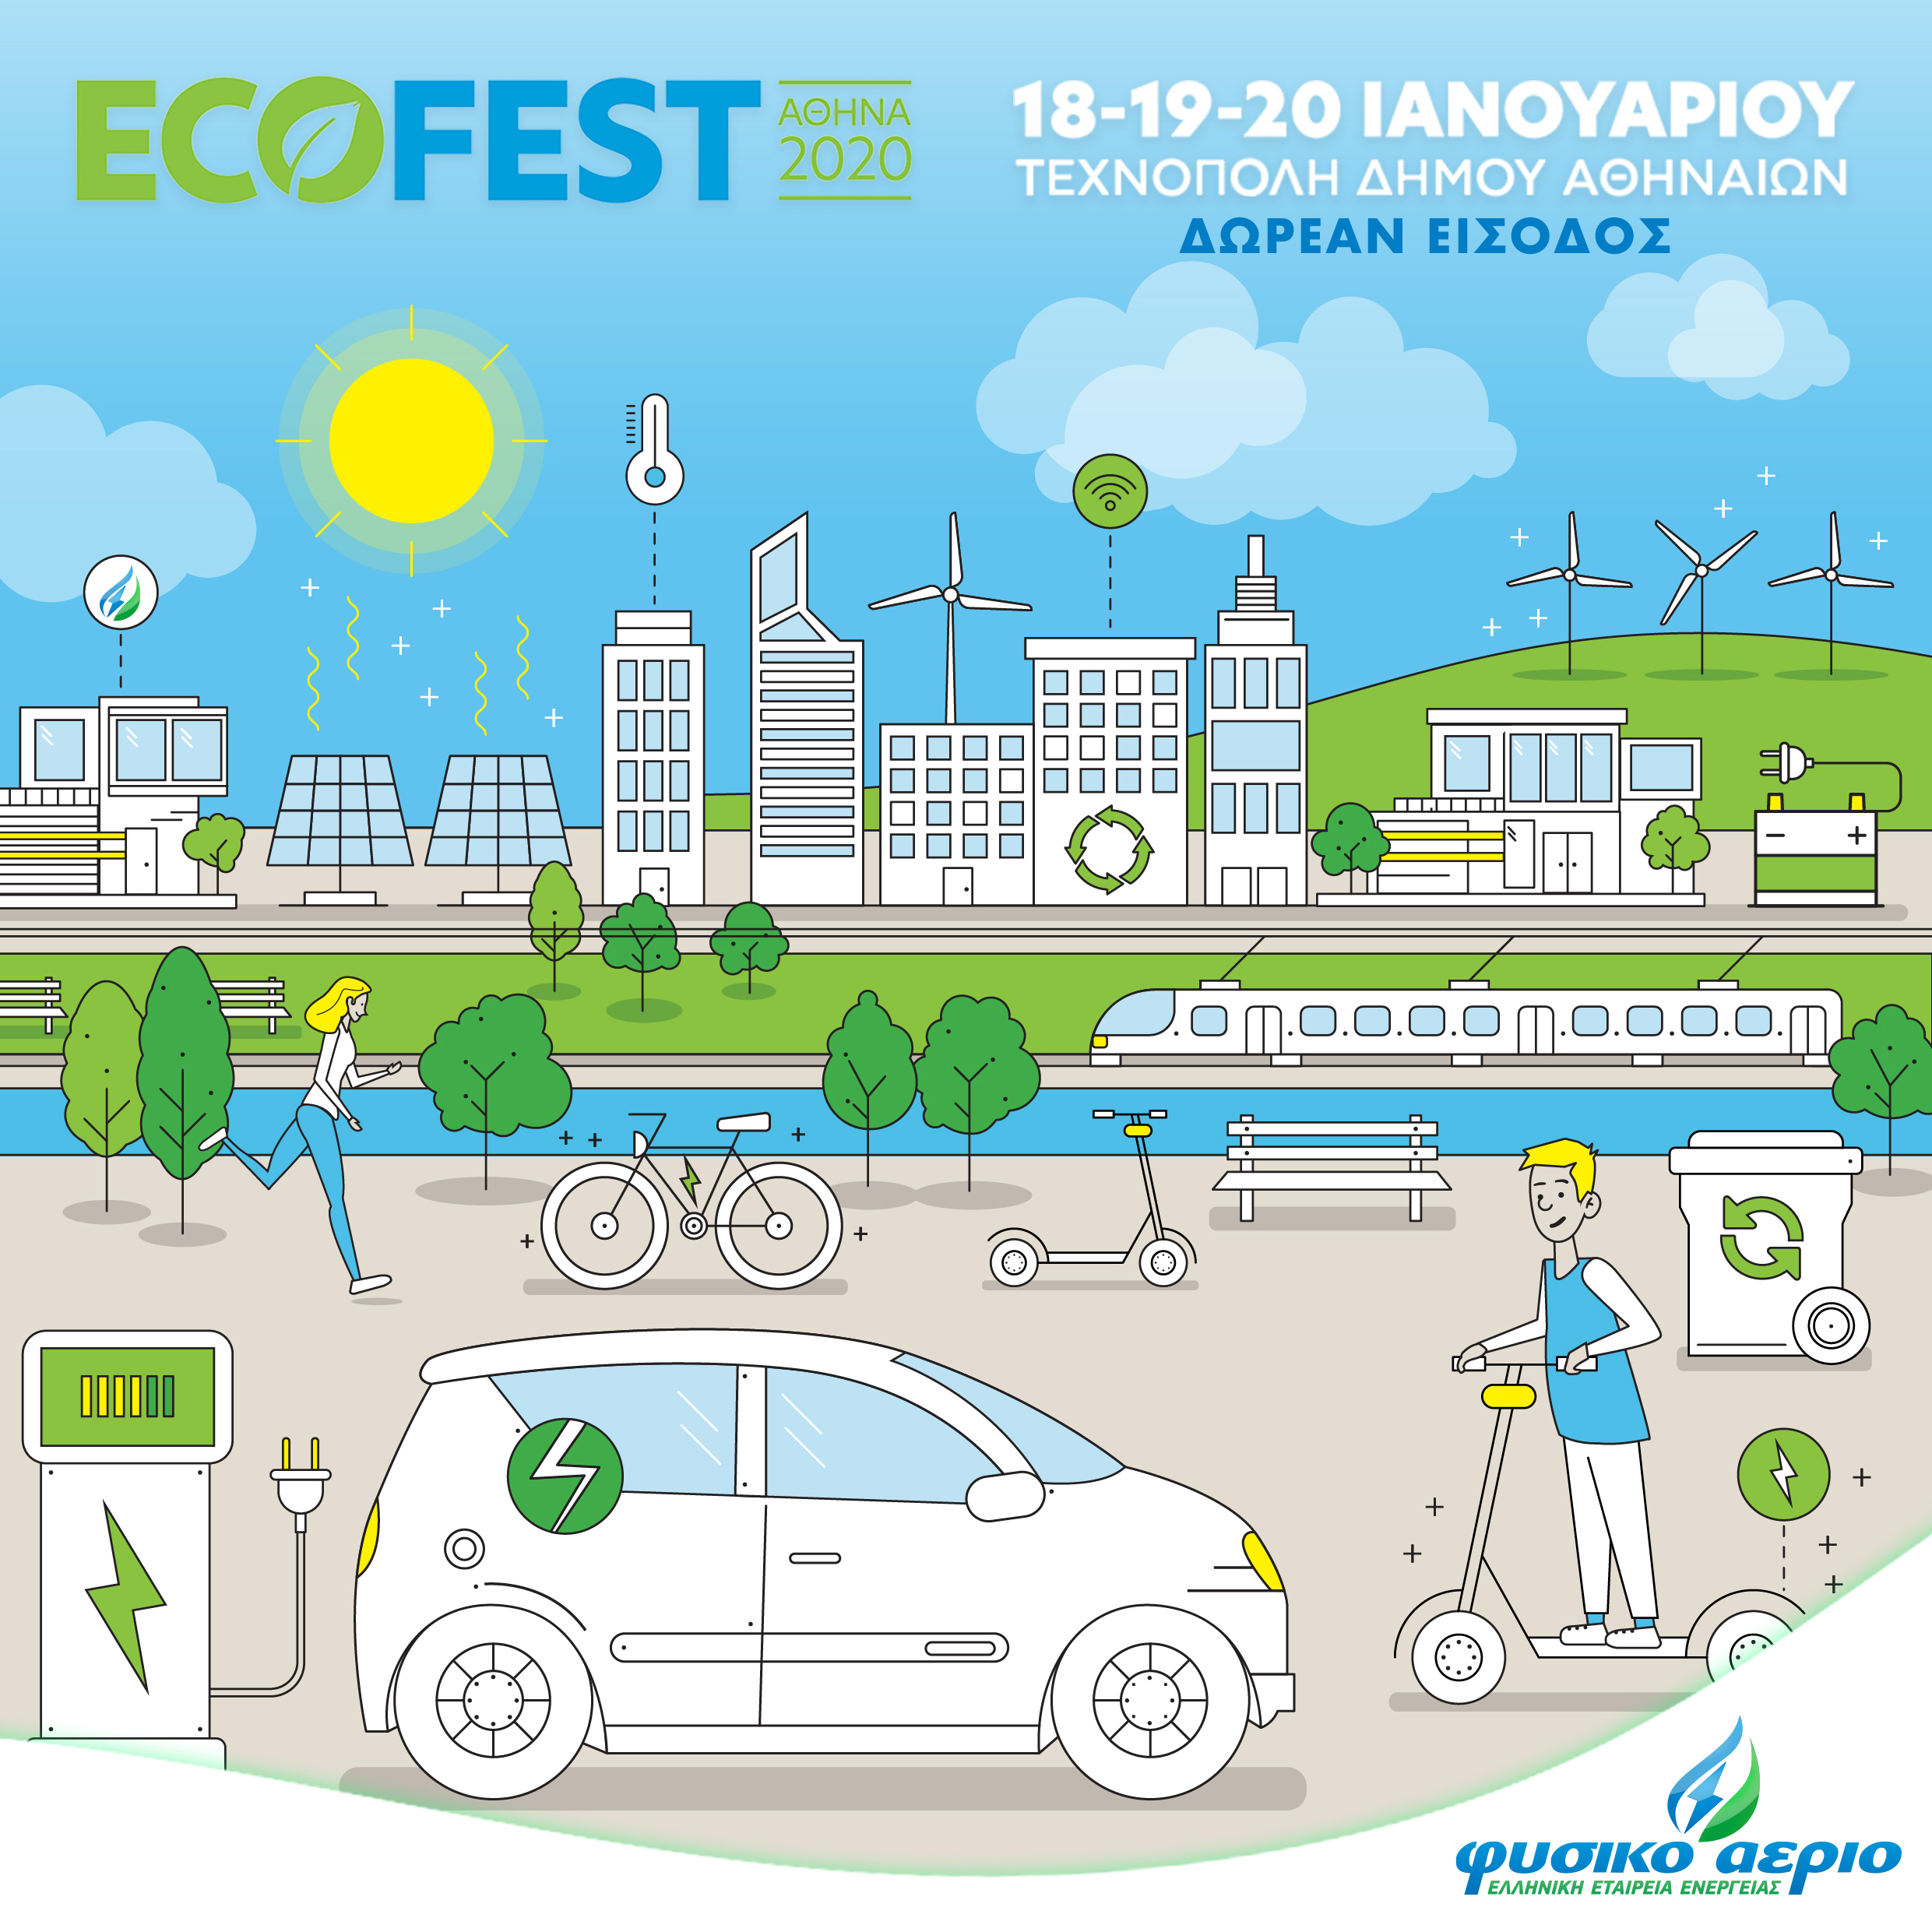 Το Φυσικό Αέριο Ελληνική Εταιρεία Ενέργειας ο Μεγάλος Χορηγός στο Eco-Fest 2020